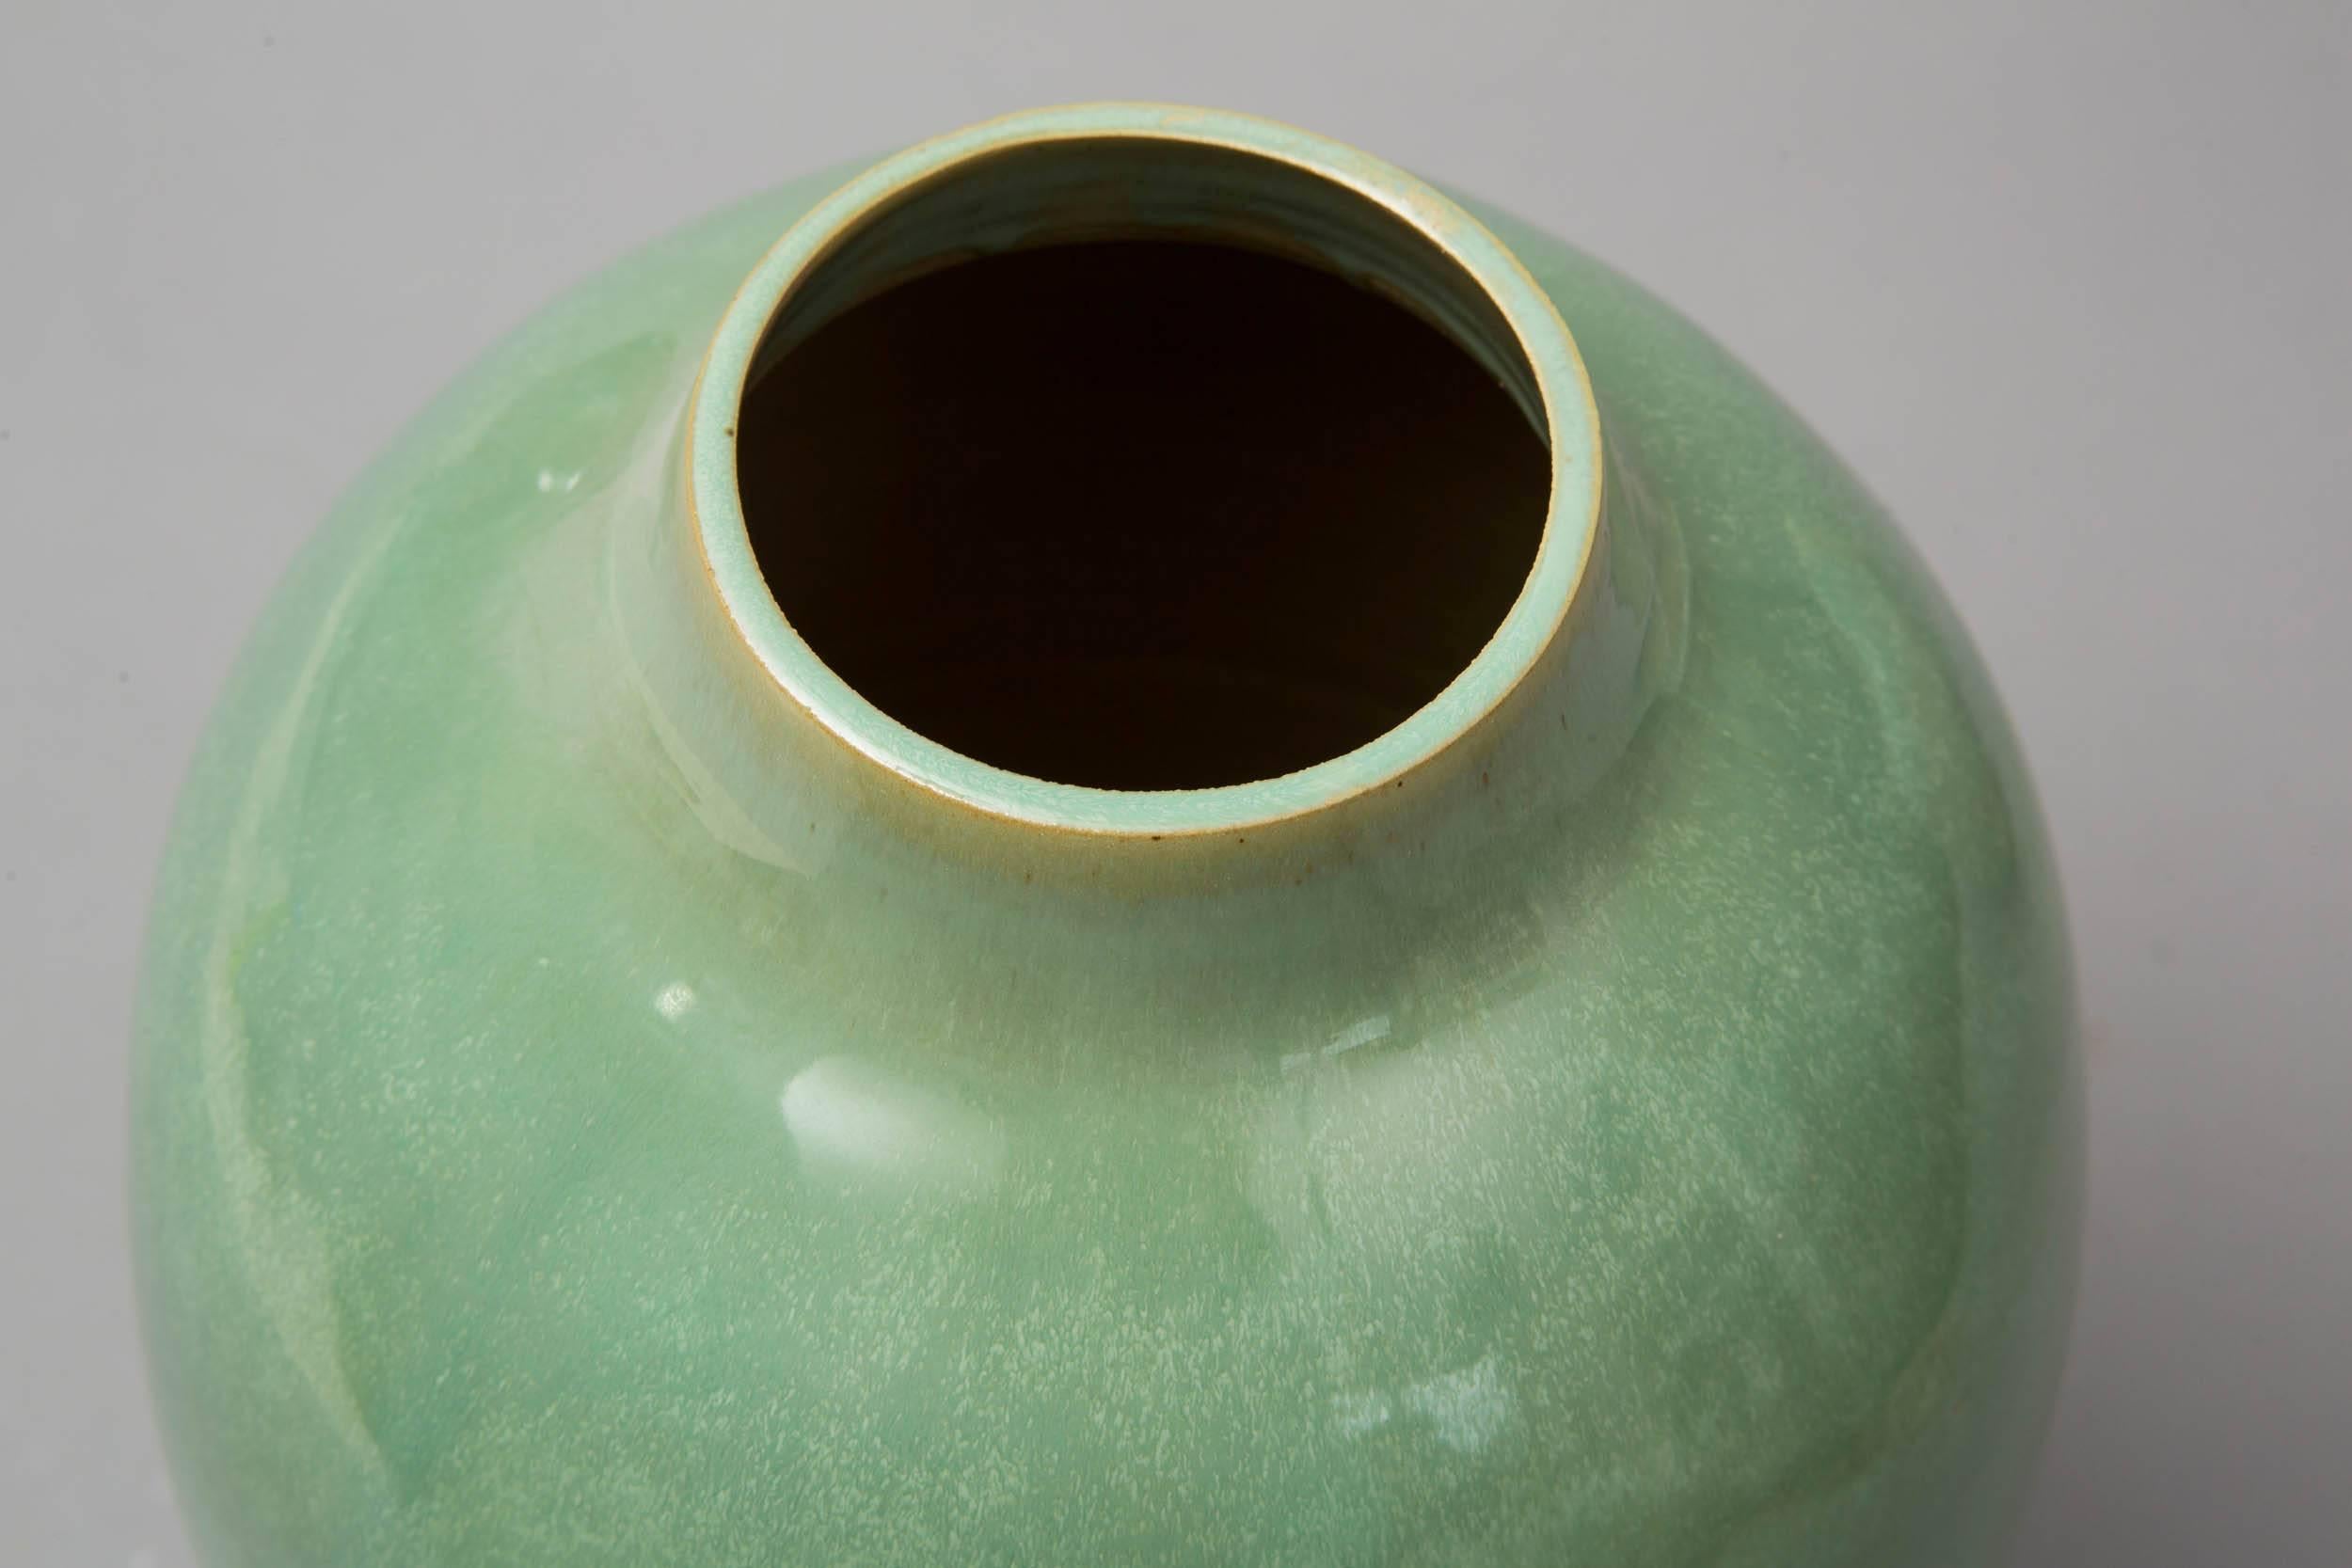 Enameled Contemporary, 2015 Green Celadon Vase, One of a Kind, Karen Swami For Sale